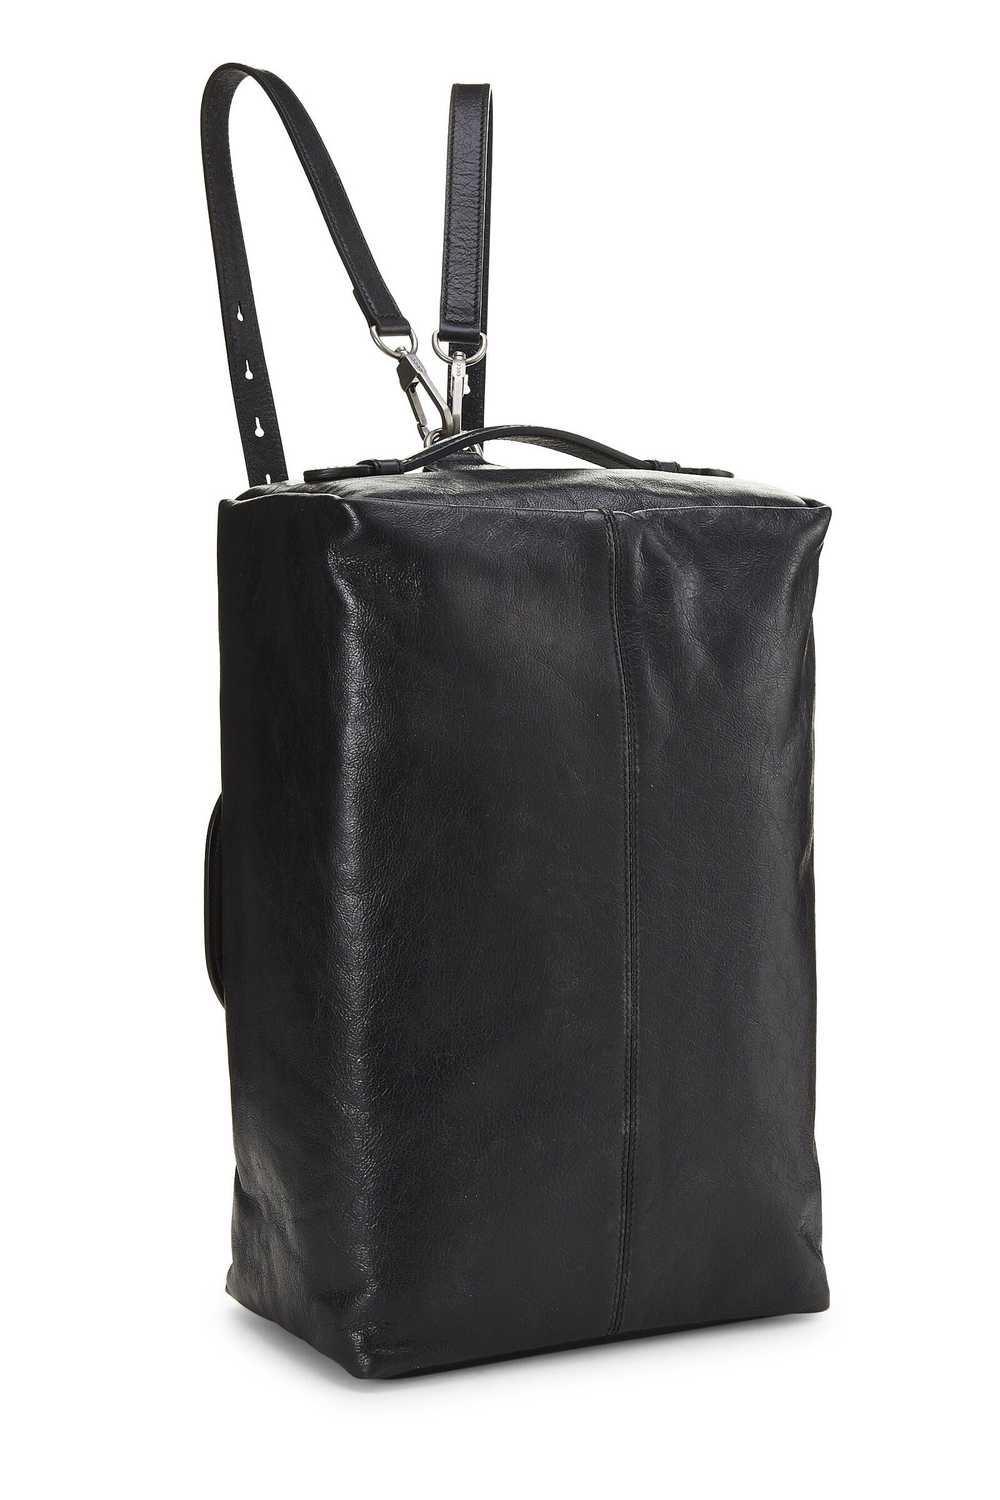 Black Leather Soft Backpack - image 4